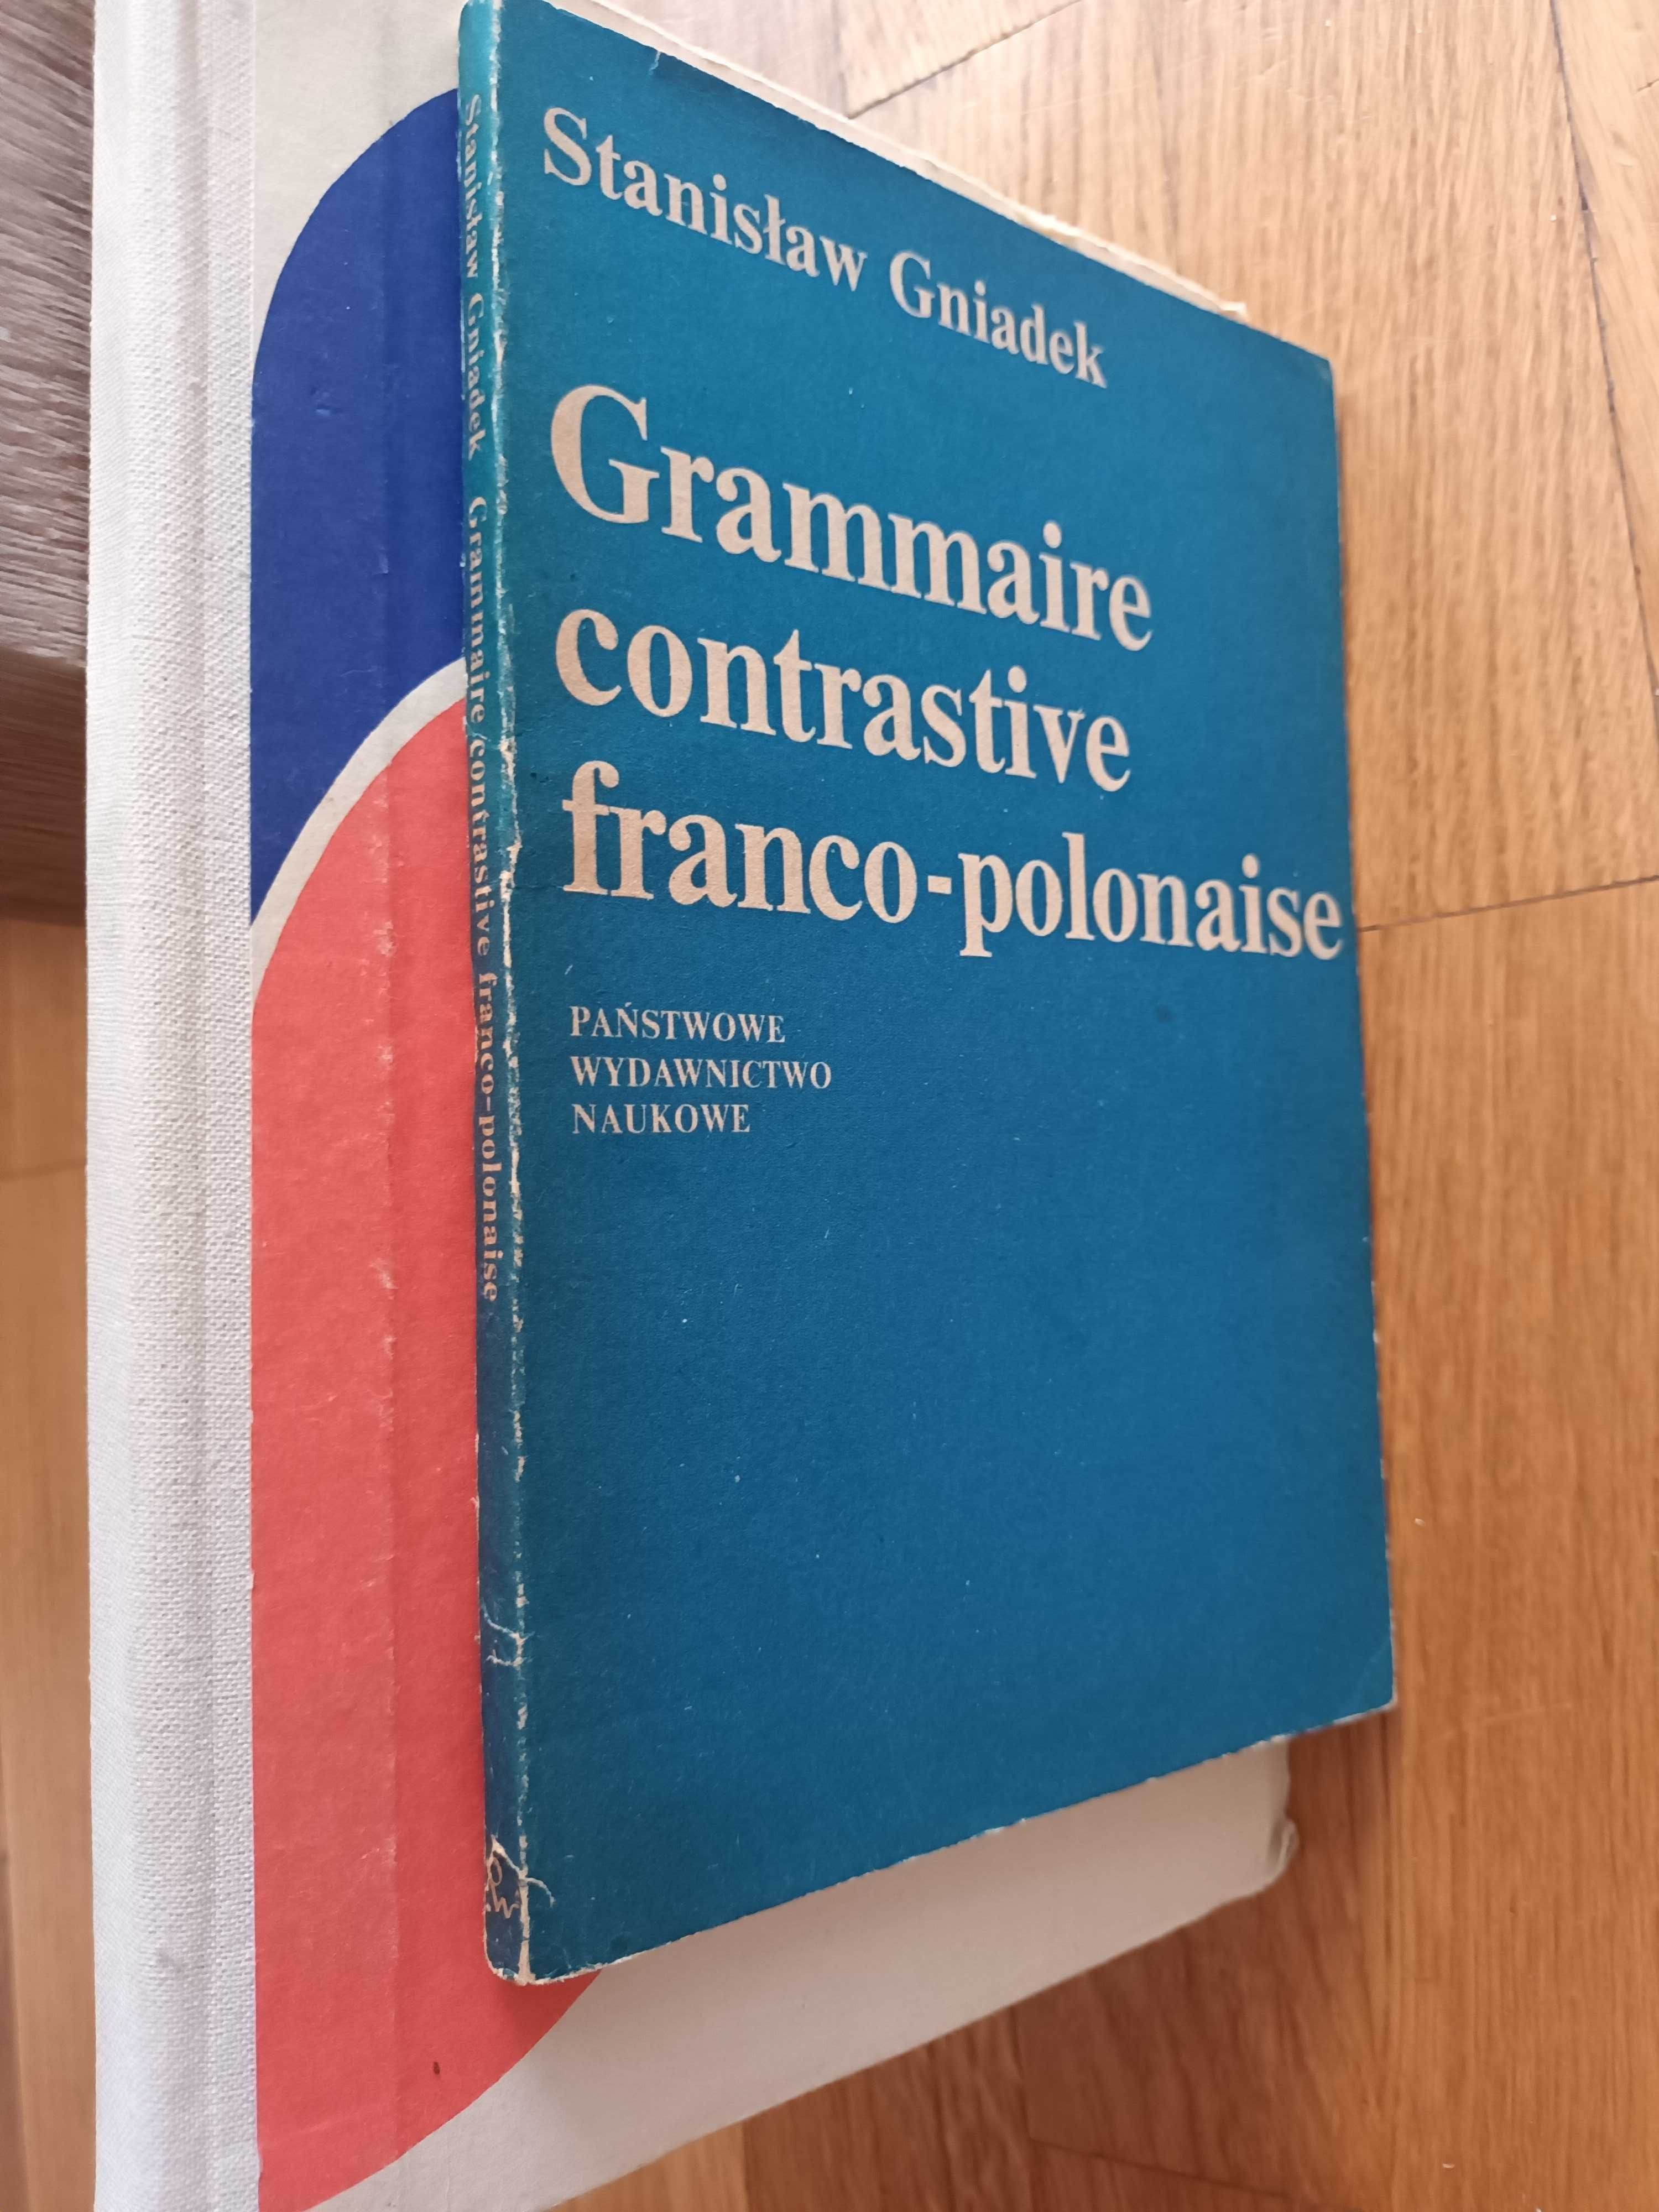 Gniadek  Grammaire contrastive franco-polonaise 8  Łozińska  Gramaty 7